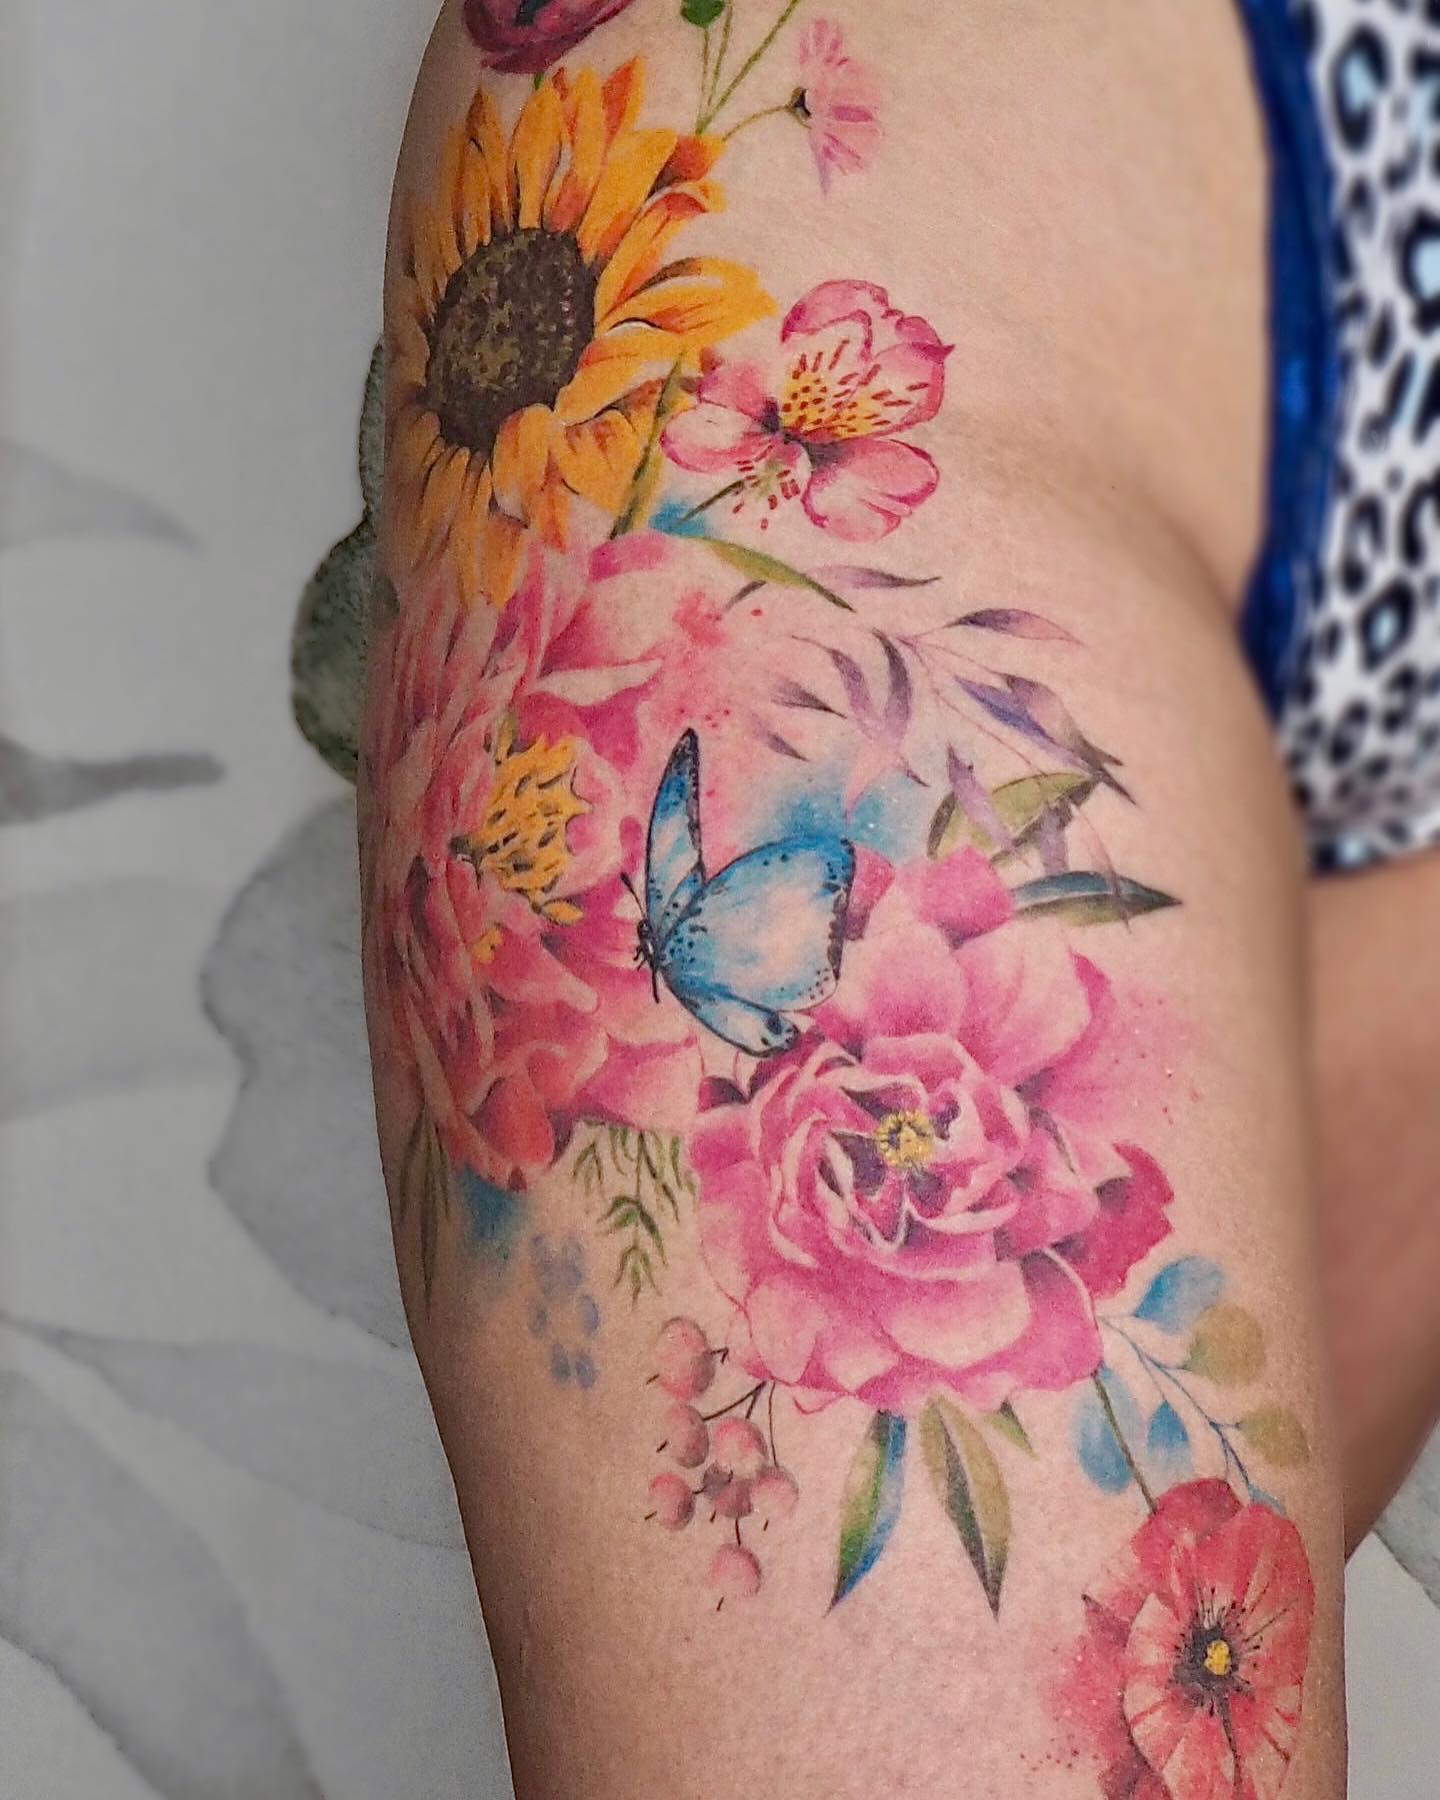 Tatuaje de cadera colorido y artístico.